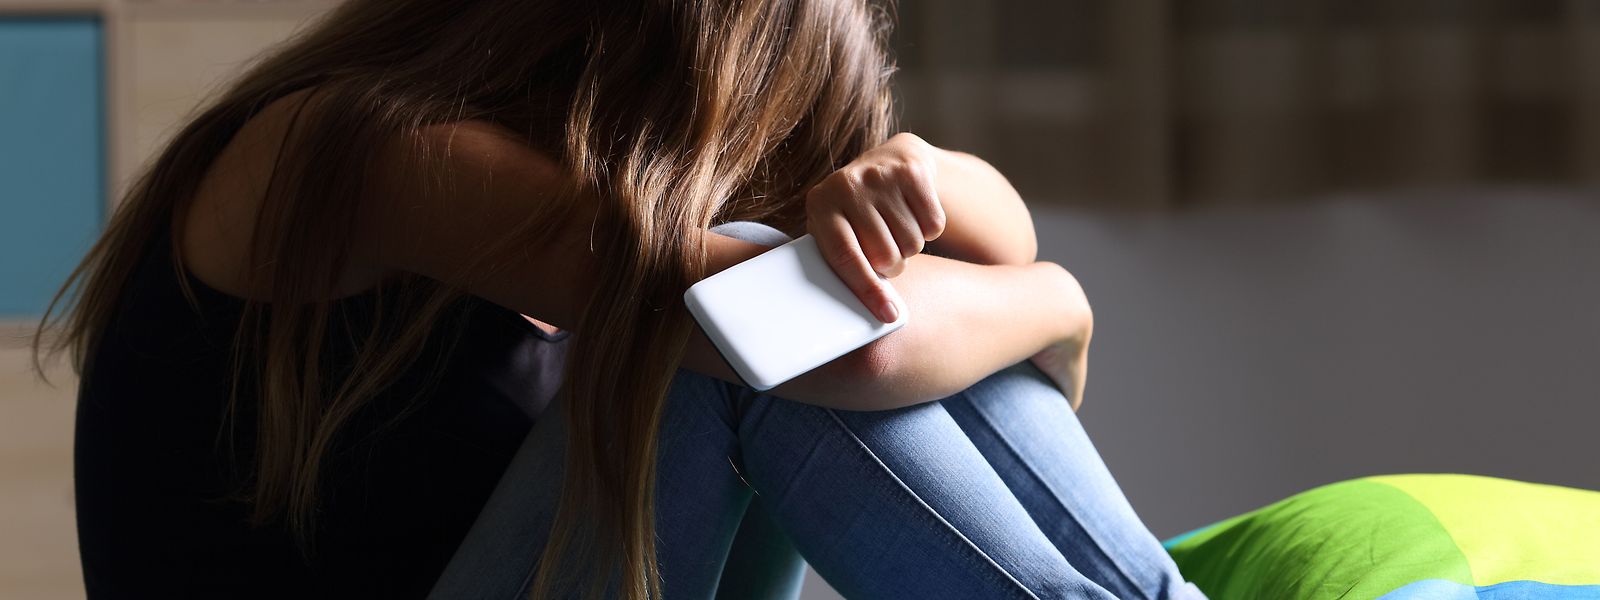 En 2020, plus d'un adolescent sur dix affirme avoir été victime de cyberharcèlement.  